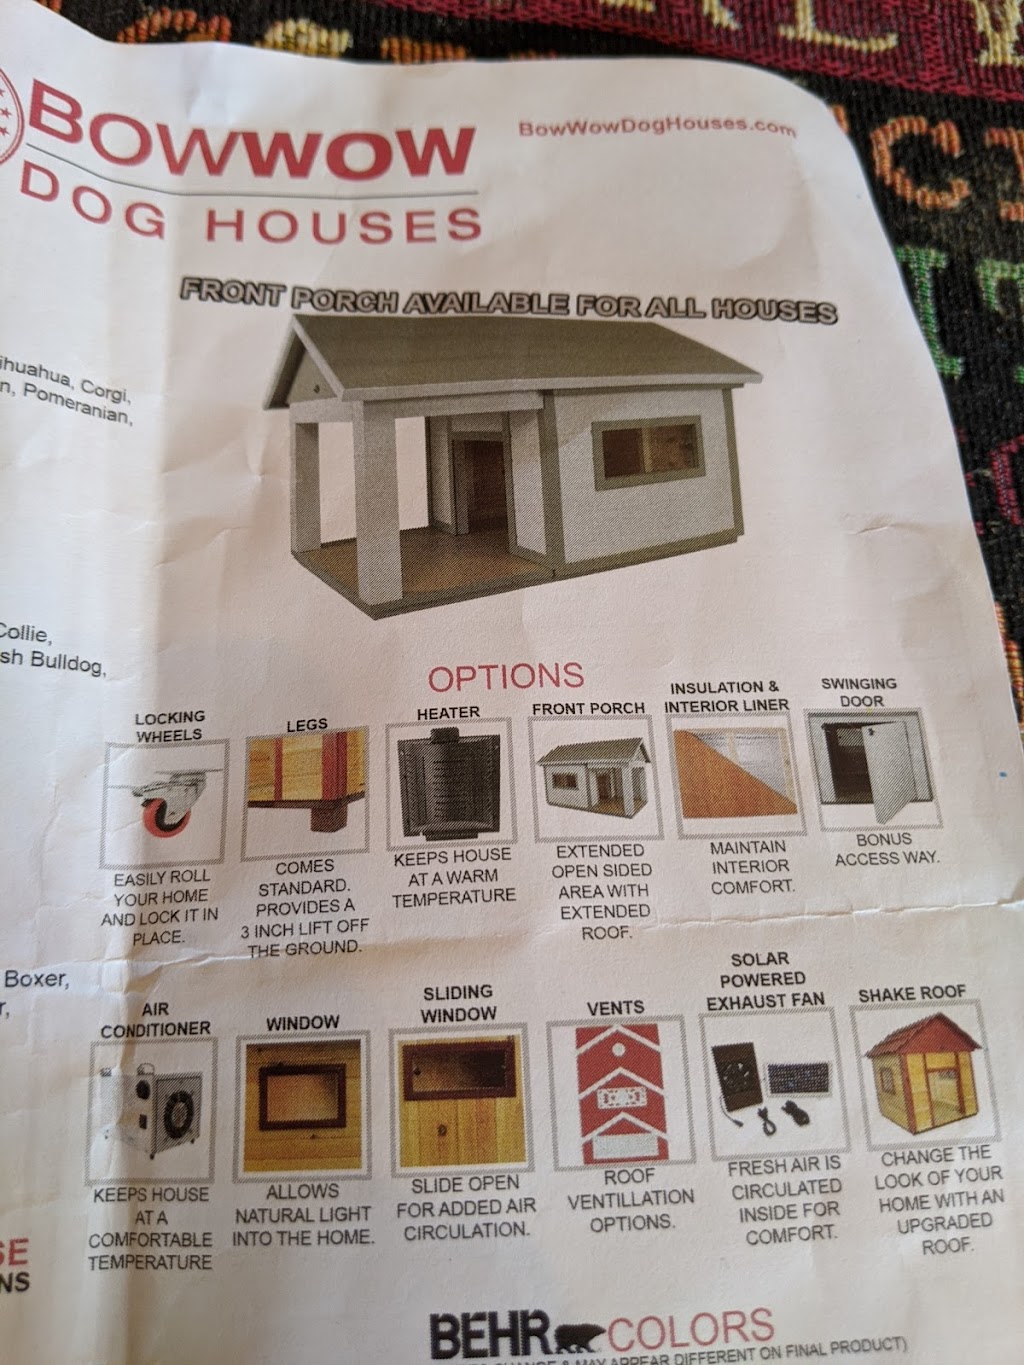 Bow Wow Dog Houses | 17071 Hercules St, Hesperia, CA 92345 | Phone: (310) 327-1655